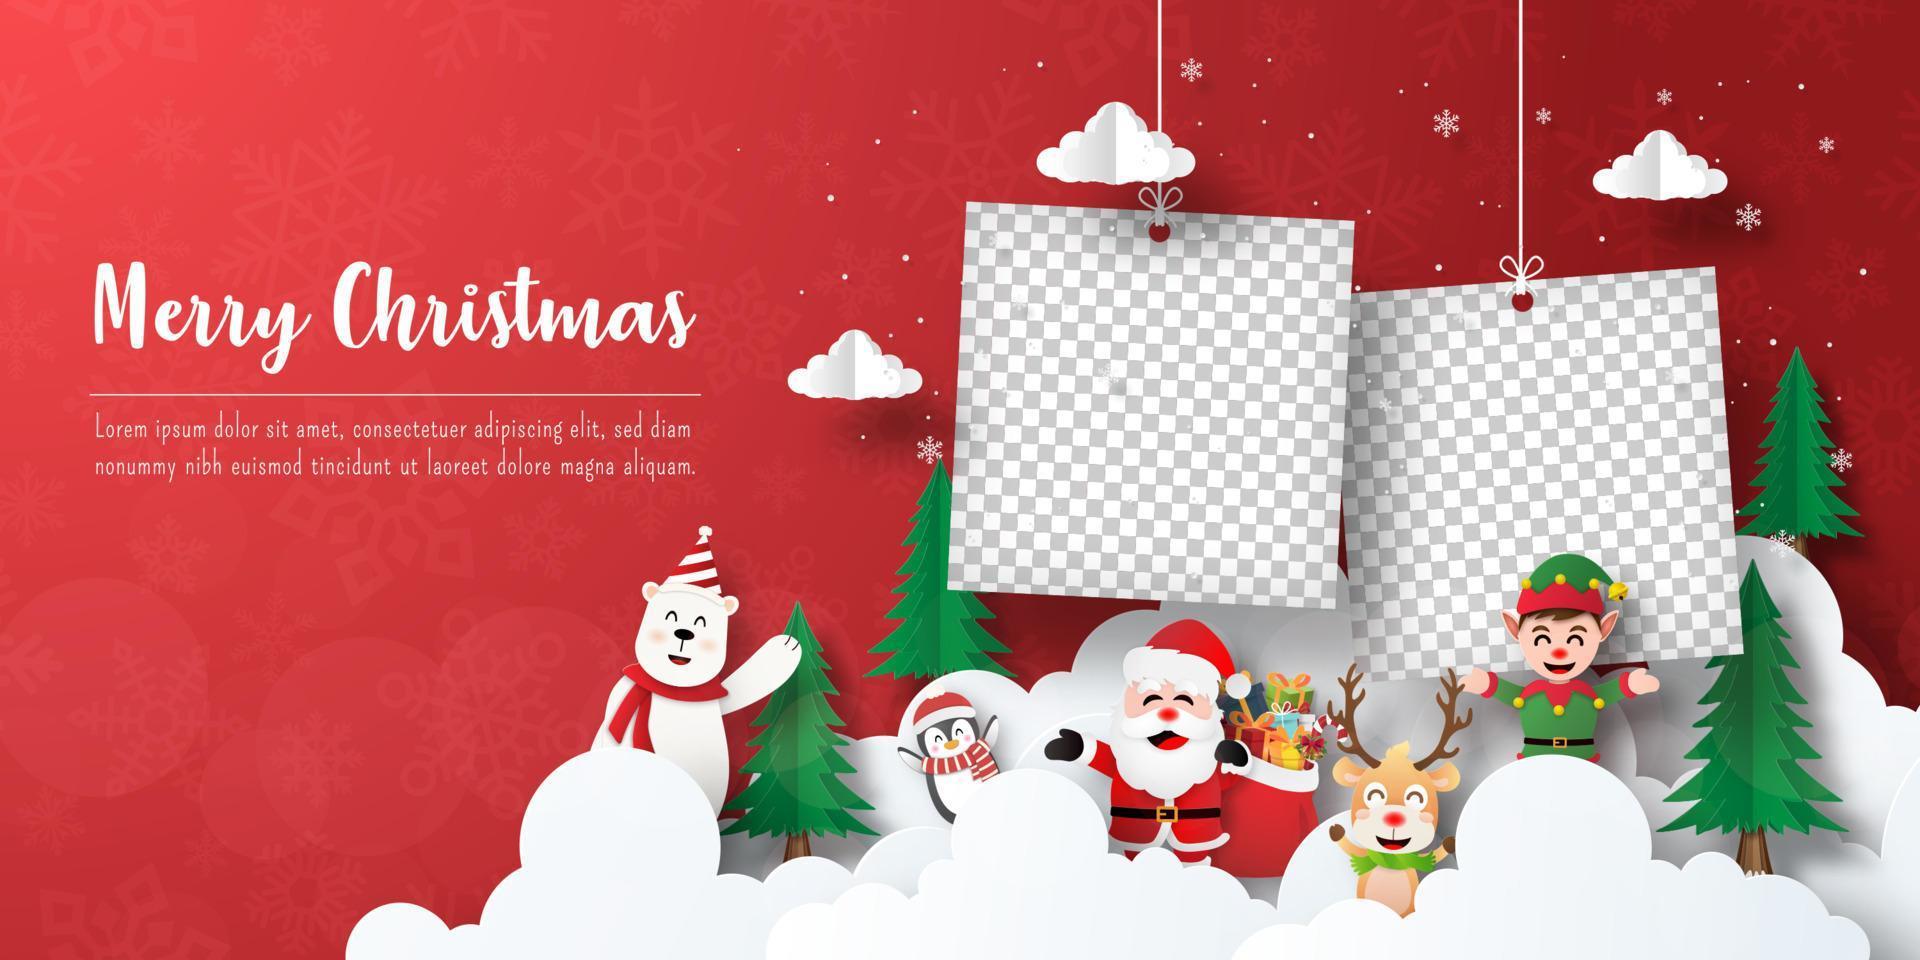 feliz navidad y próspero año nuevo, postal de banner navideño de santa claus y amigos con marco de fotos en blanco vector